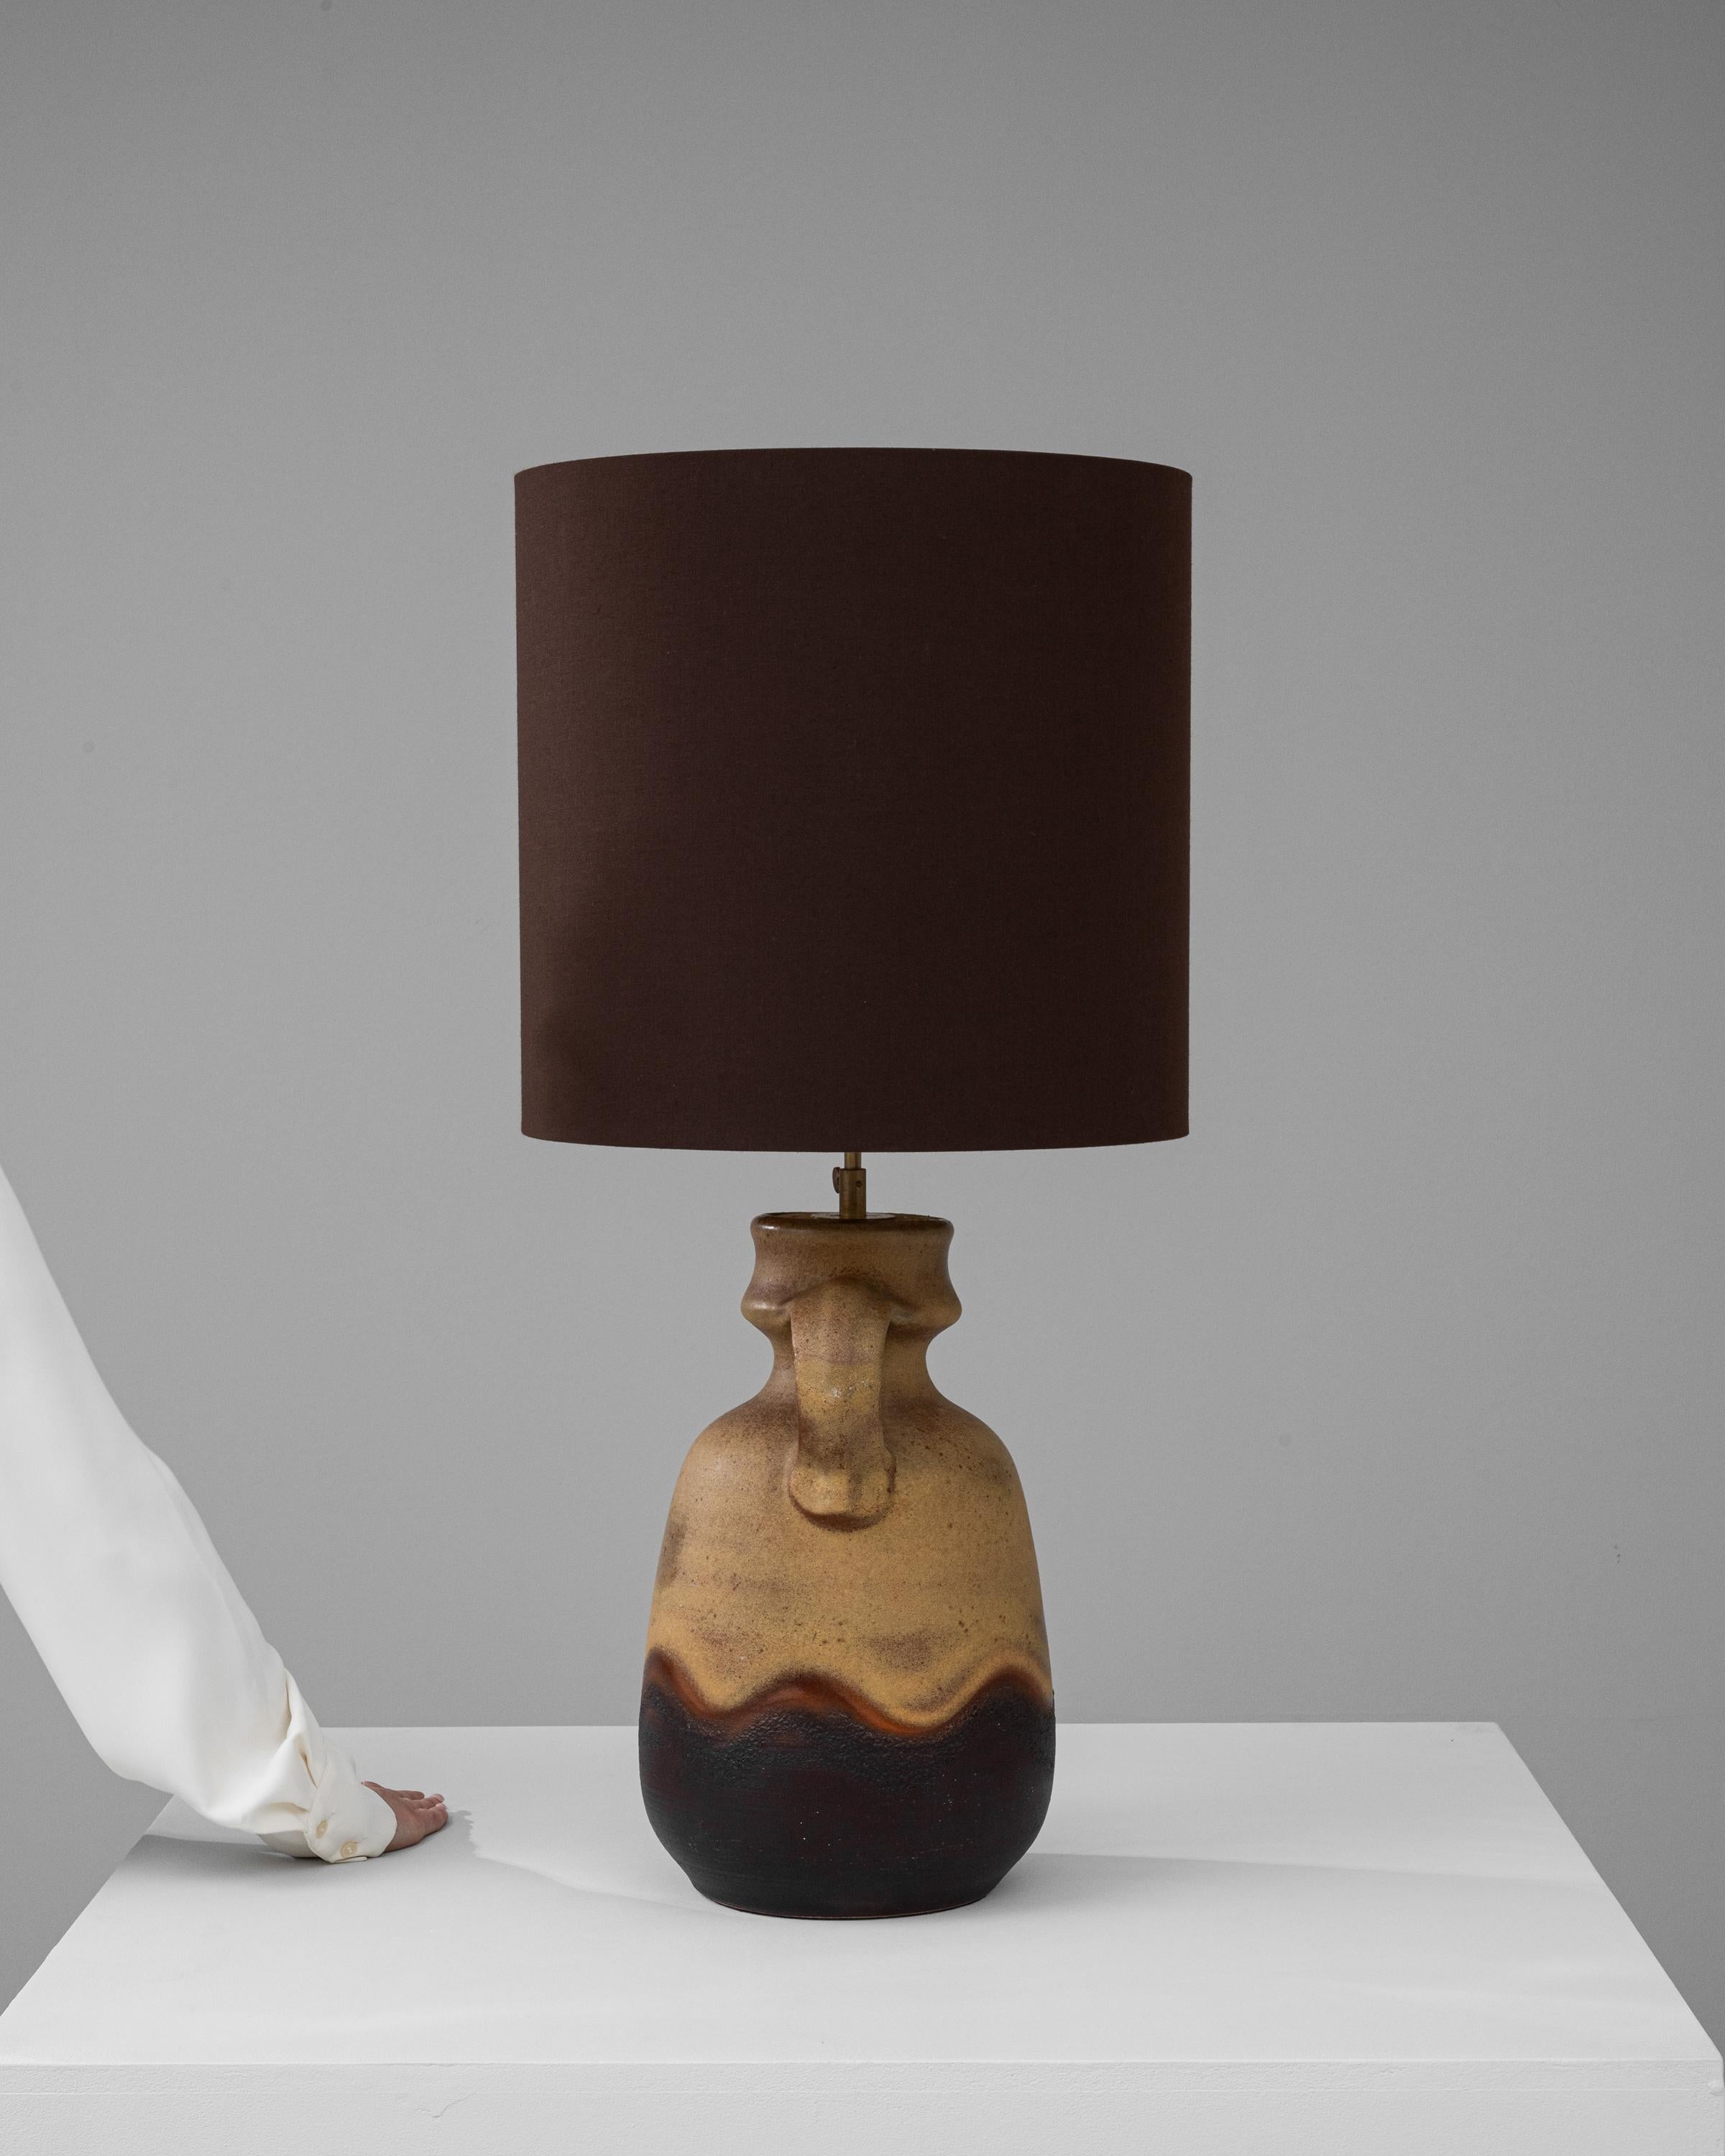 Diese deutsche Keramiktischlampe aus dem 20. Jahrhundert versprüht einen rustikalen Charme, der an eine einfachere Zeit erinnert. Der gedrungene Sockel aus Steingut weist einen markanten henkelähnlichen Vorsprung auf, eine Hommage an traditionelle